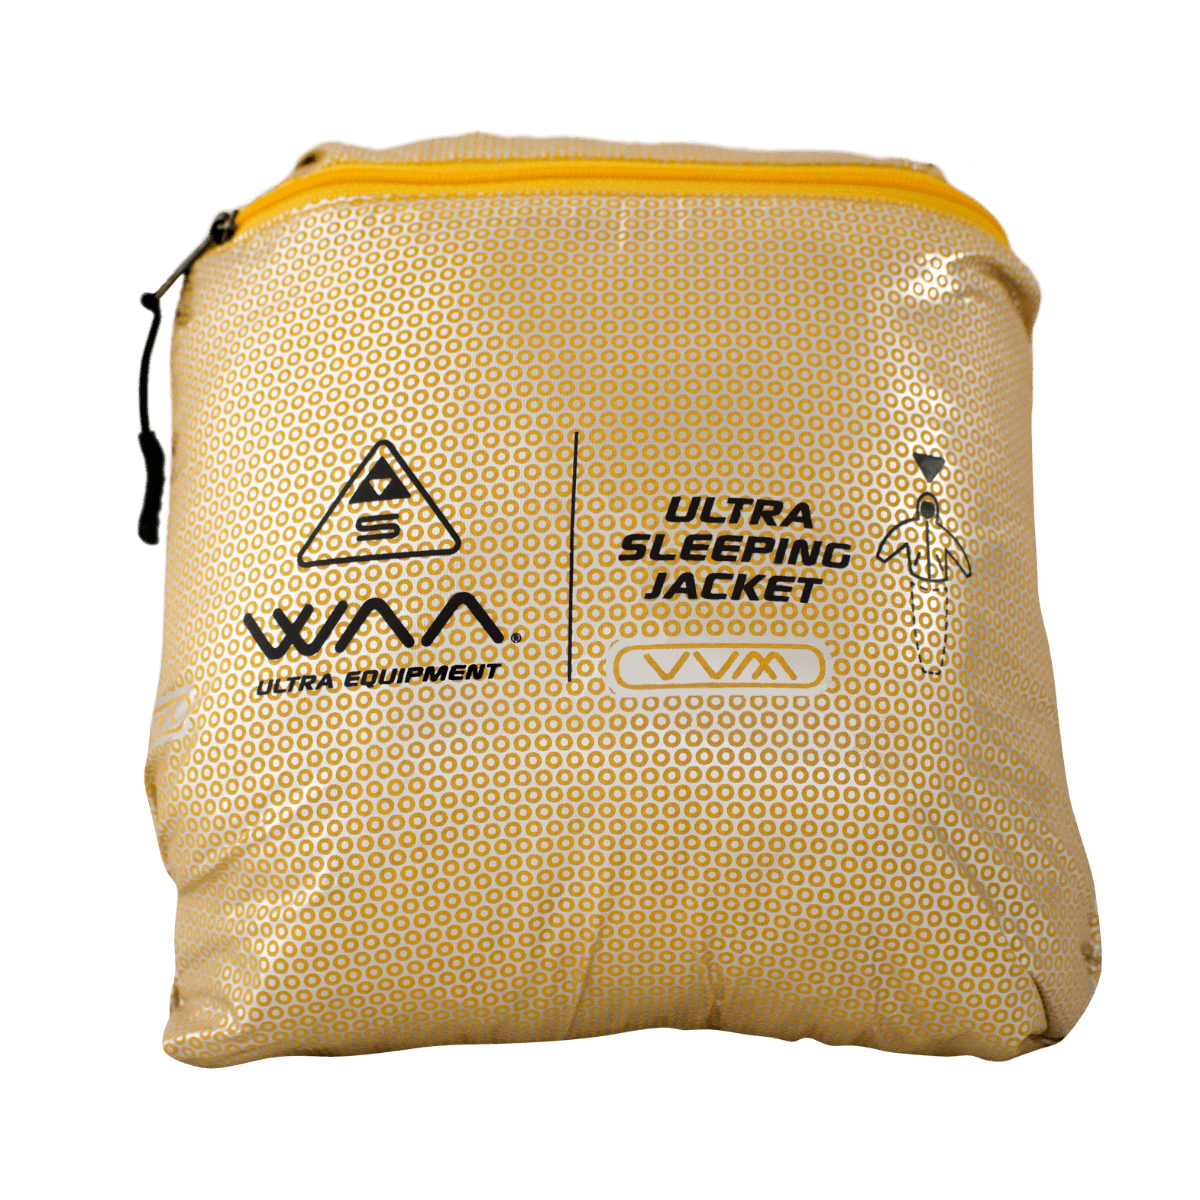 WAA Ultra Down Sleeping Jacket - Unisex